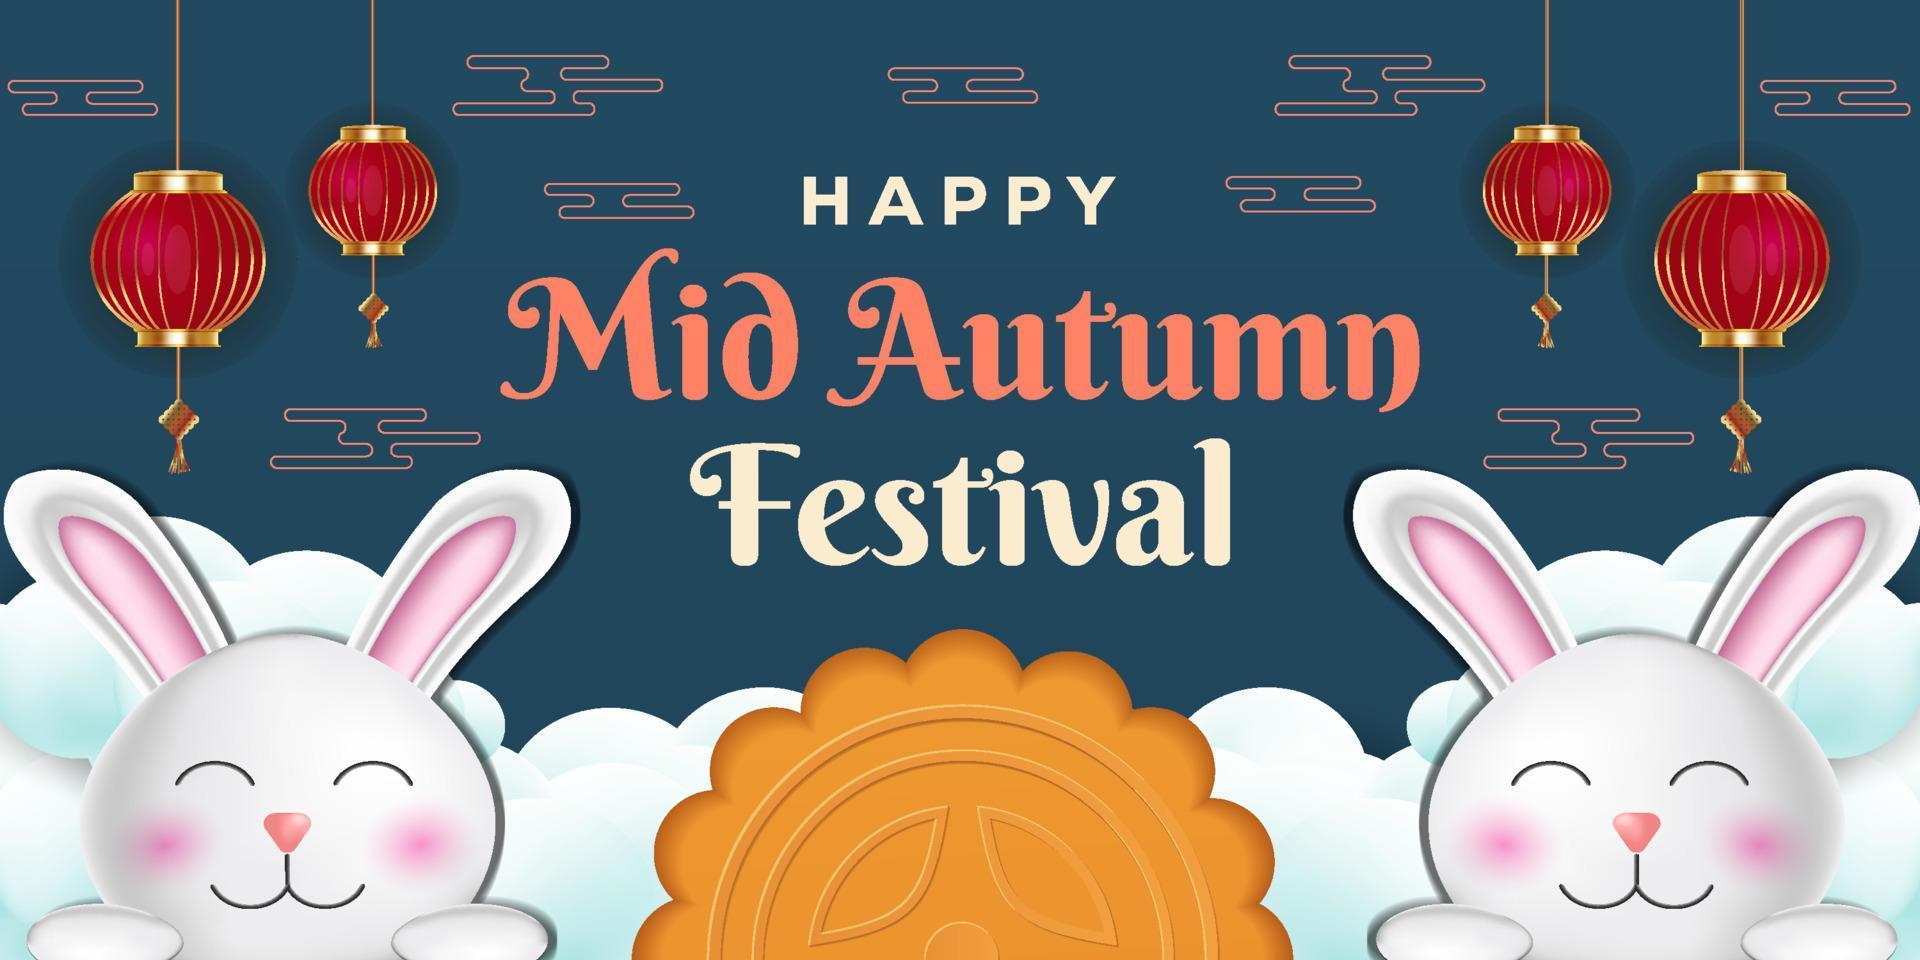 illustrazione realistica del festival di metà autunno felice con conigli, lanterne e nuvole vettore